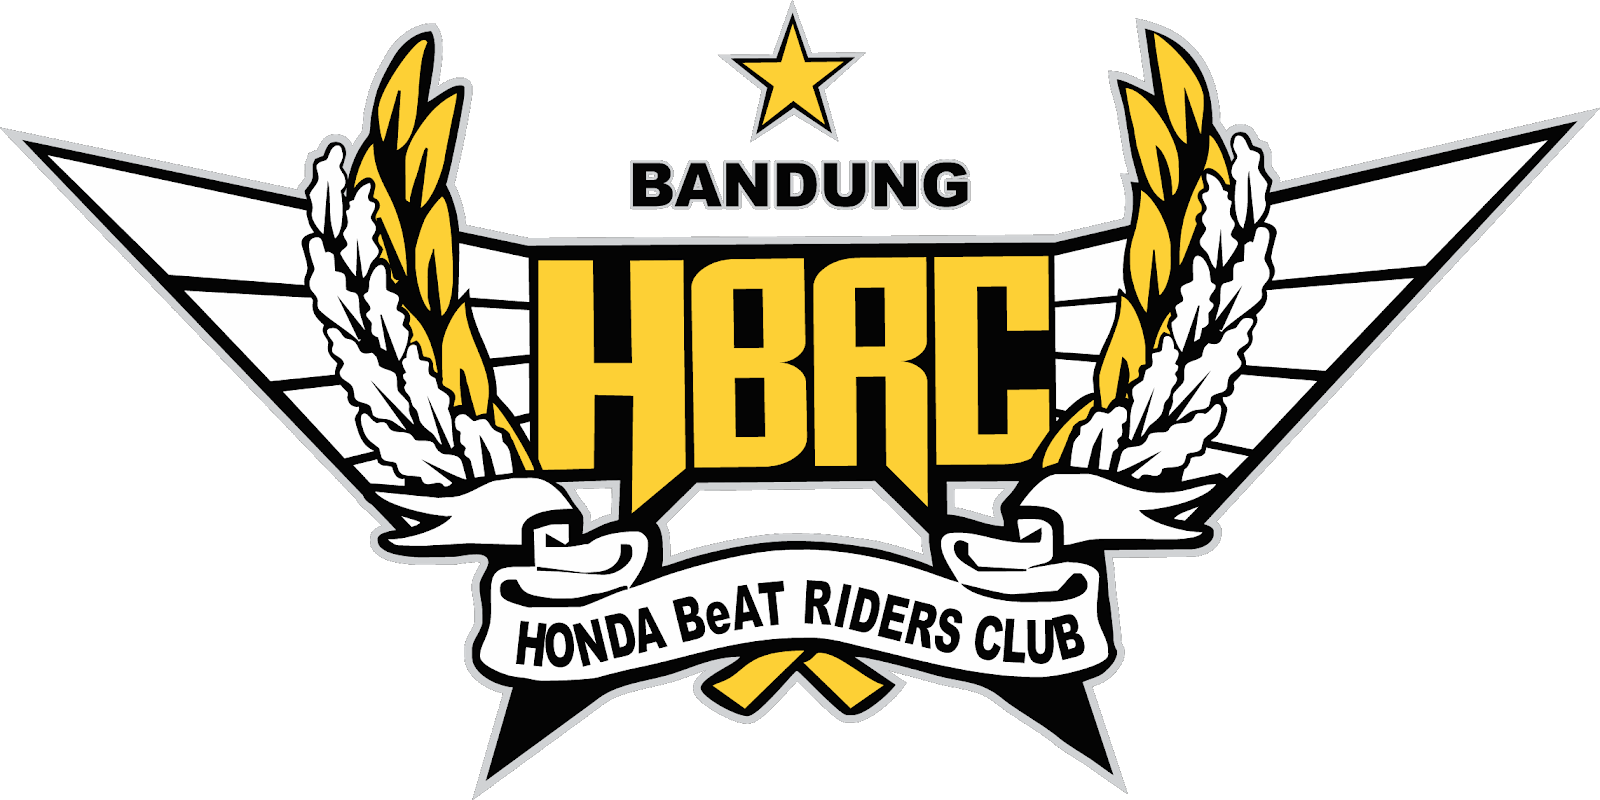 Honda Beat Riders Club Bandung